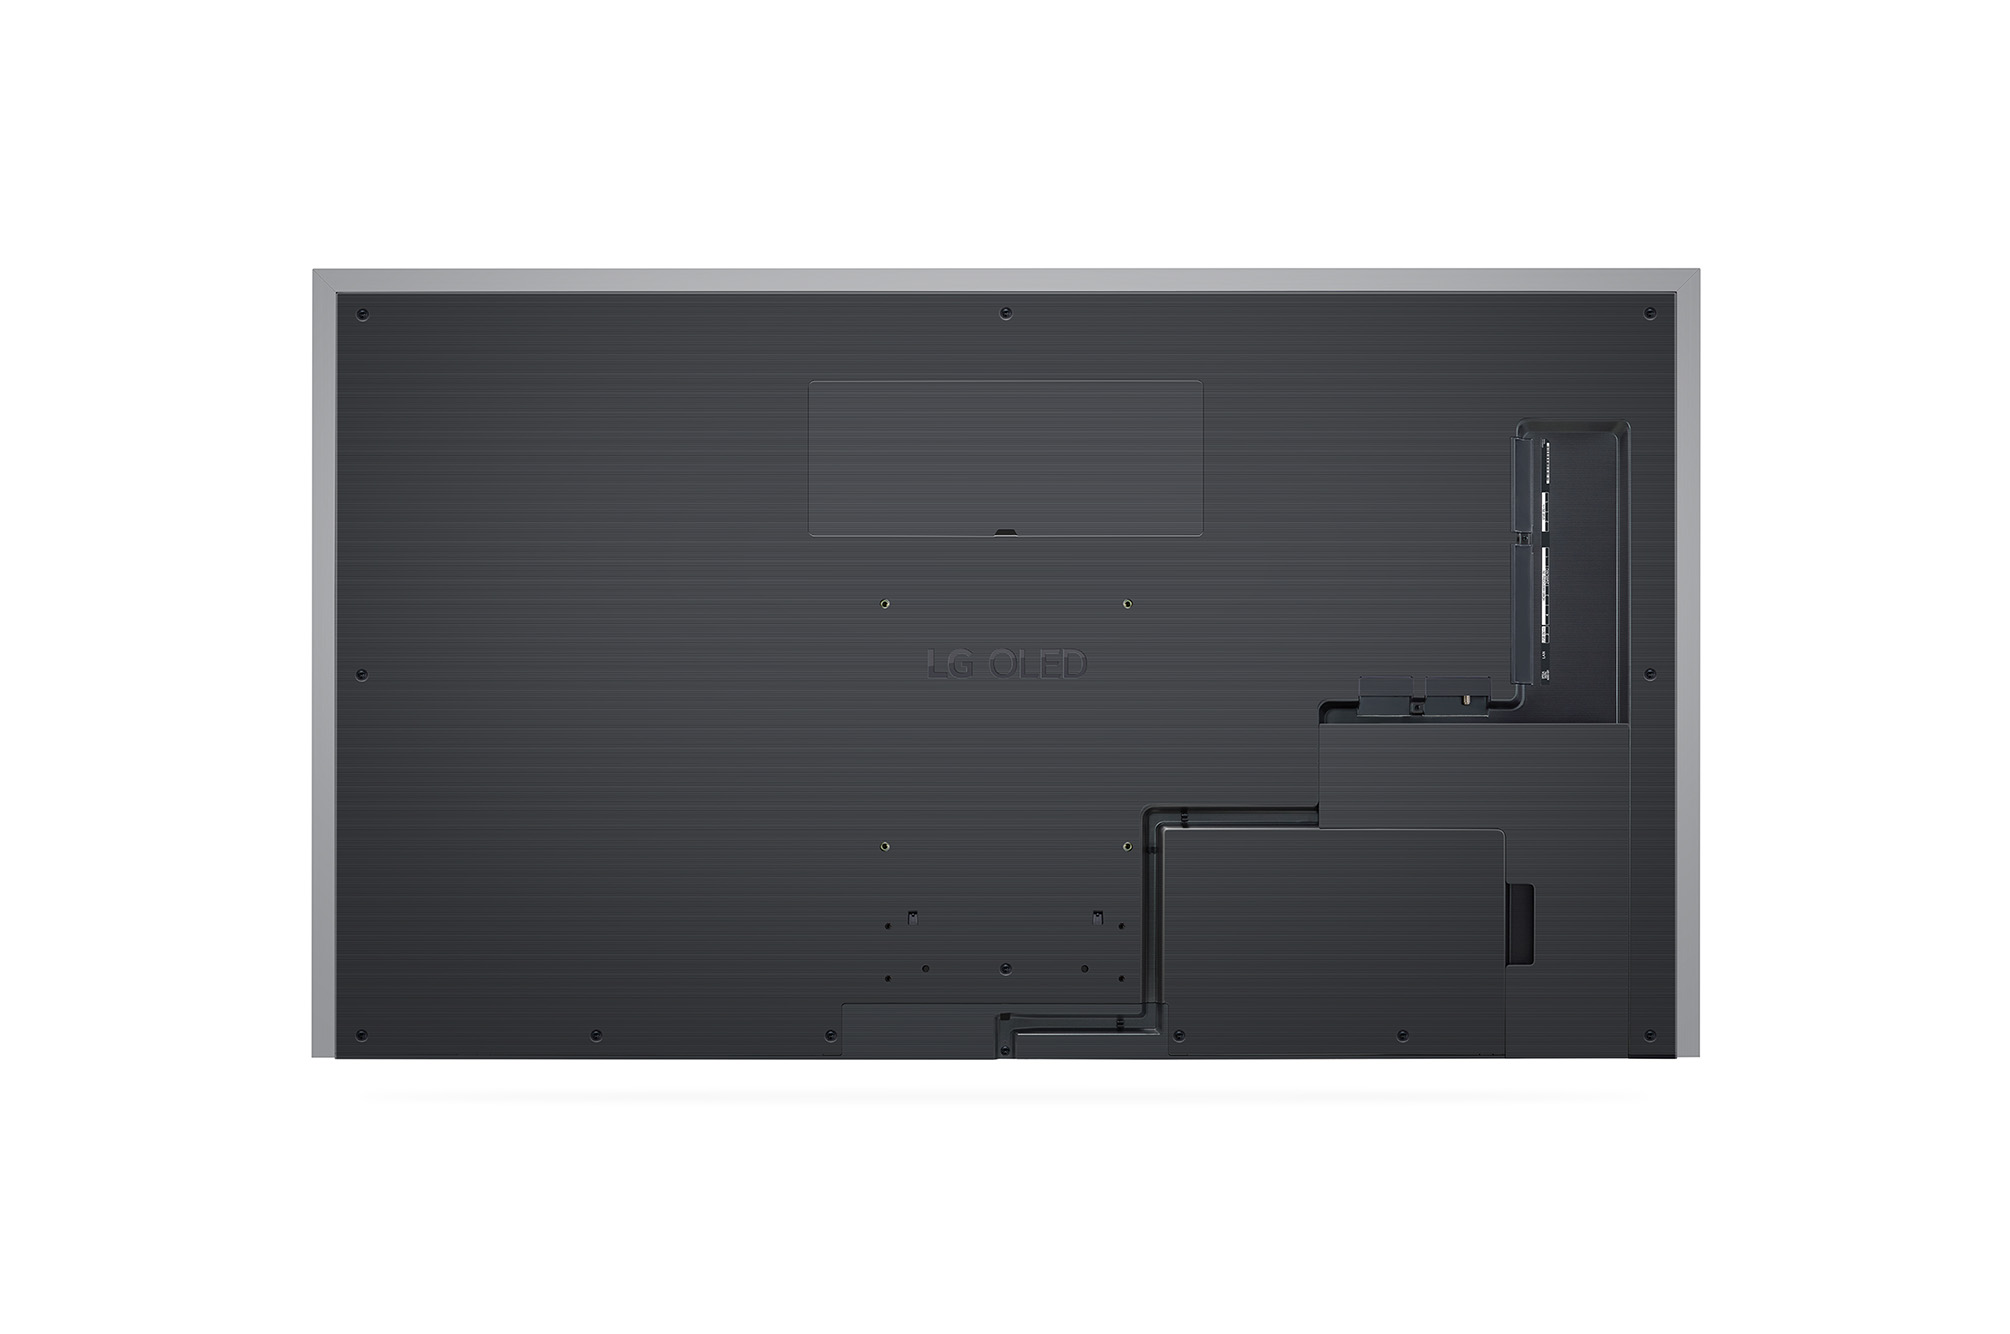 מסך טלוויזיה בטכנולוגיית LG OLED evo Gallery Edition - בגודל 83 אינץ' חכמה ברזולוציית 4K דגם: OLED83G36LA - תמונה 2